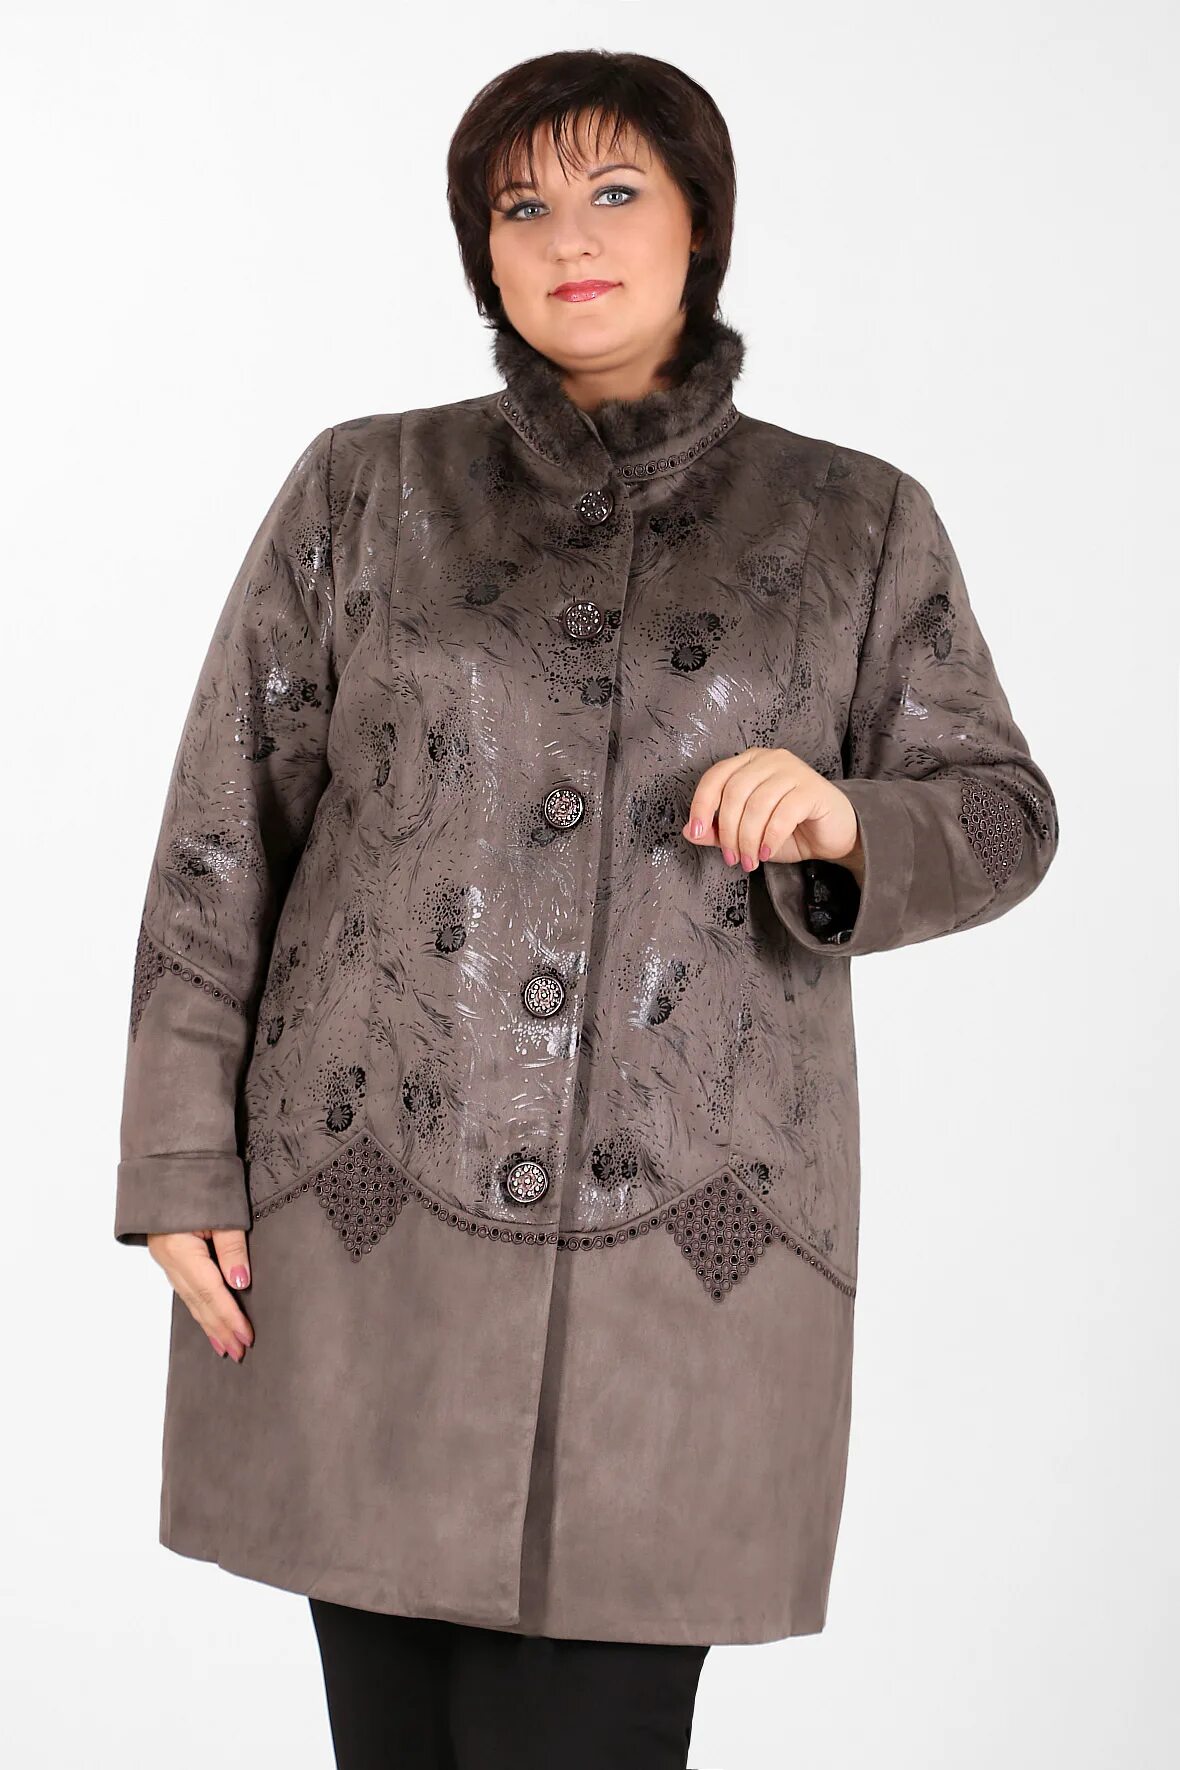 Пальто Ruiyi collection no 1713. Замшевая куртка женская Ruiyi 1713-1. Верхняя одежда женская больших размеров. Пальто женское больших размеров.